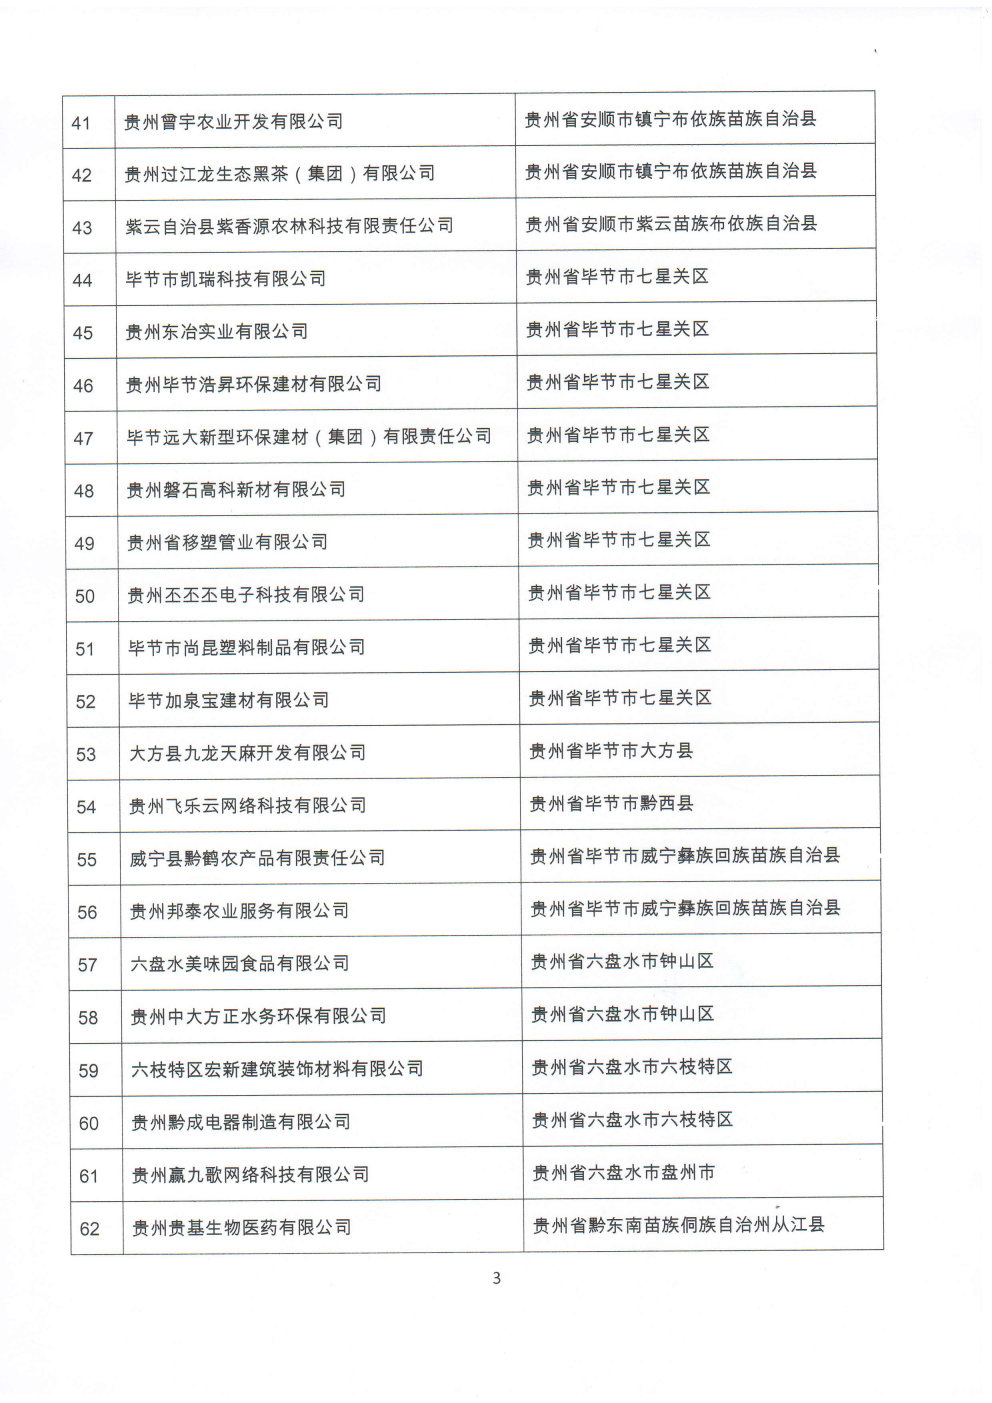 附件：贵州省2020年第三批拟入库科技型中小企业名单_Page3_Image1.jpg